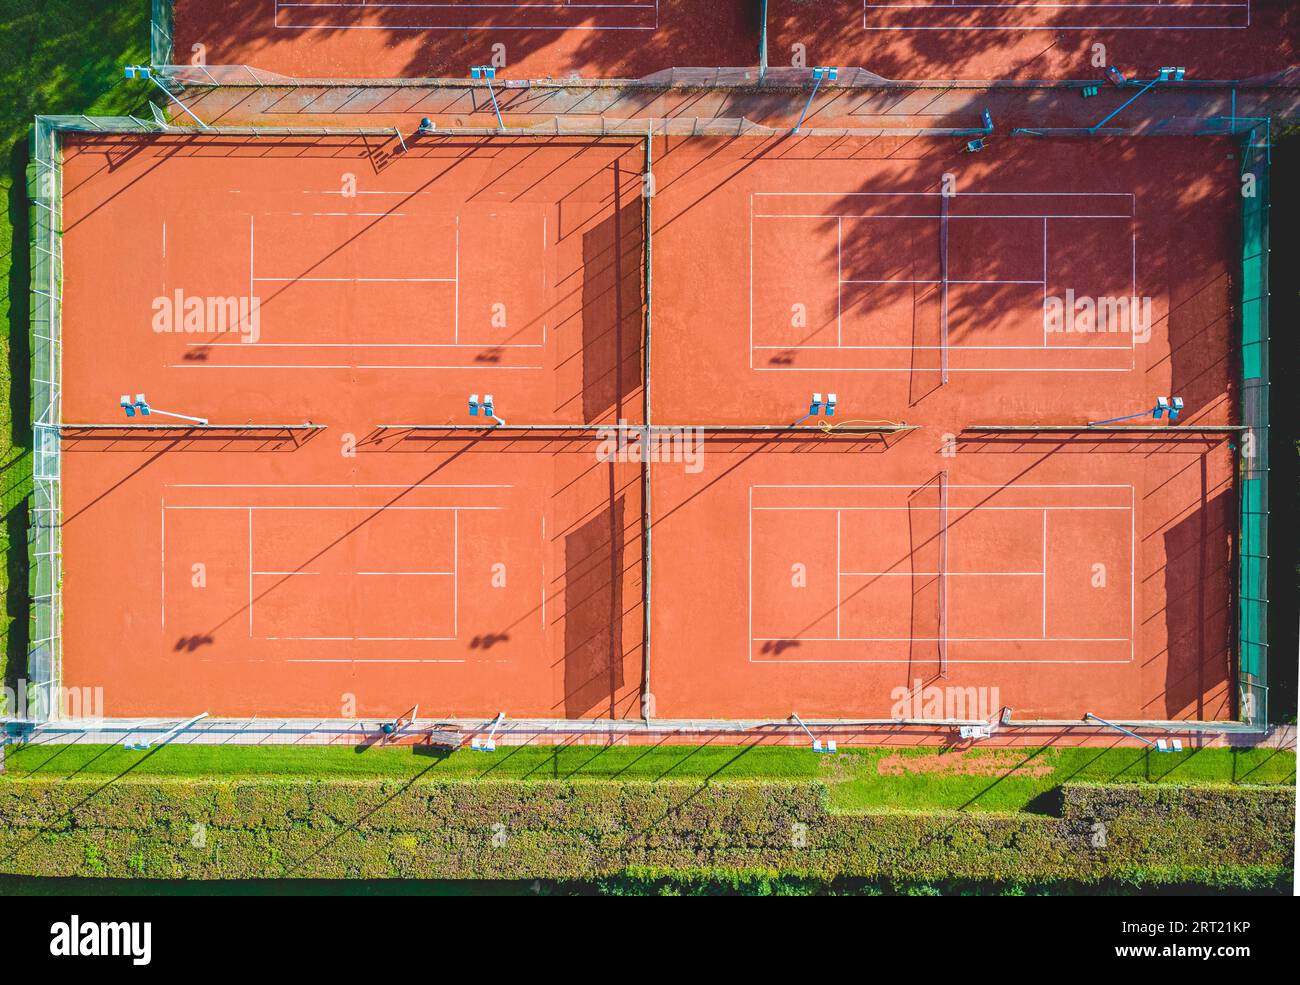 Vista aerea di un singolo campo da tennis in argilla rossa senza giocatori Foto Stock